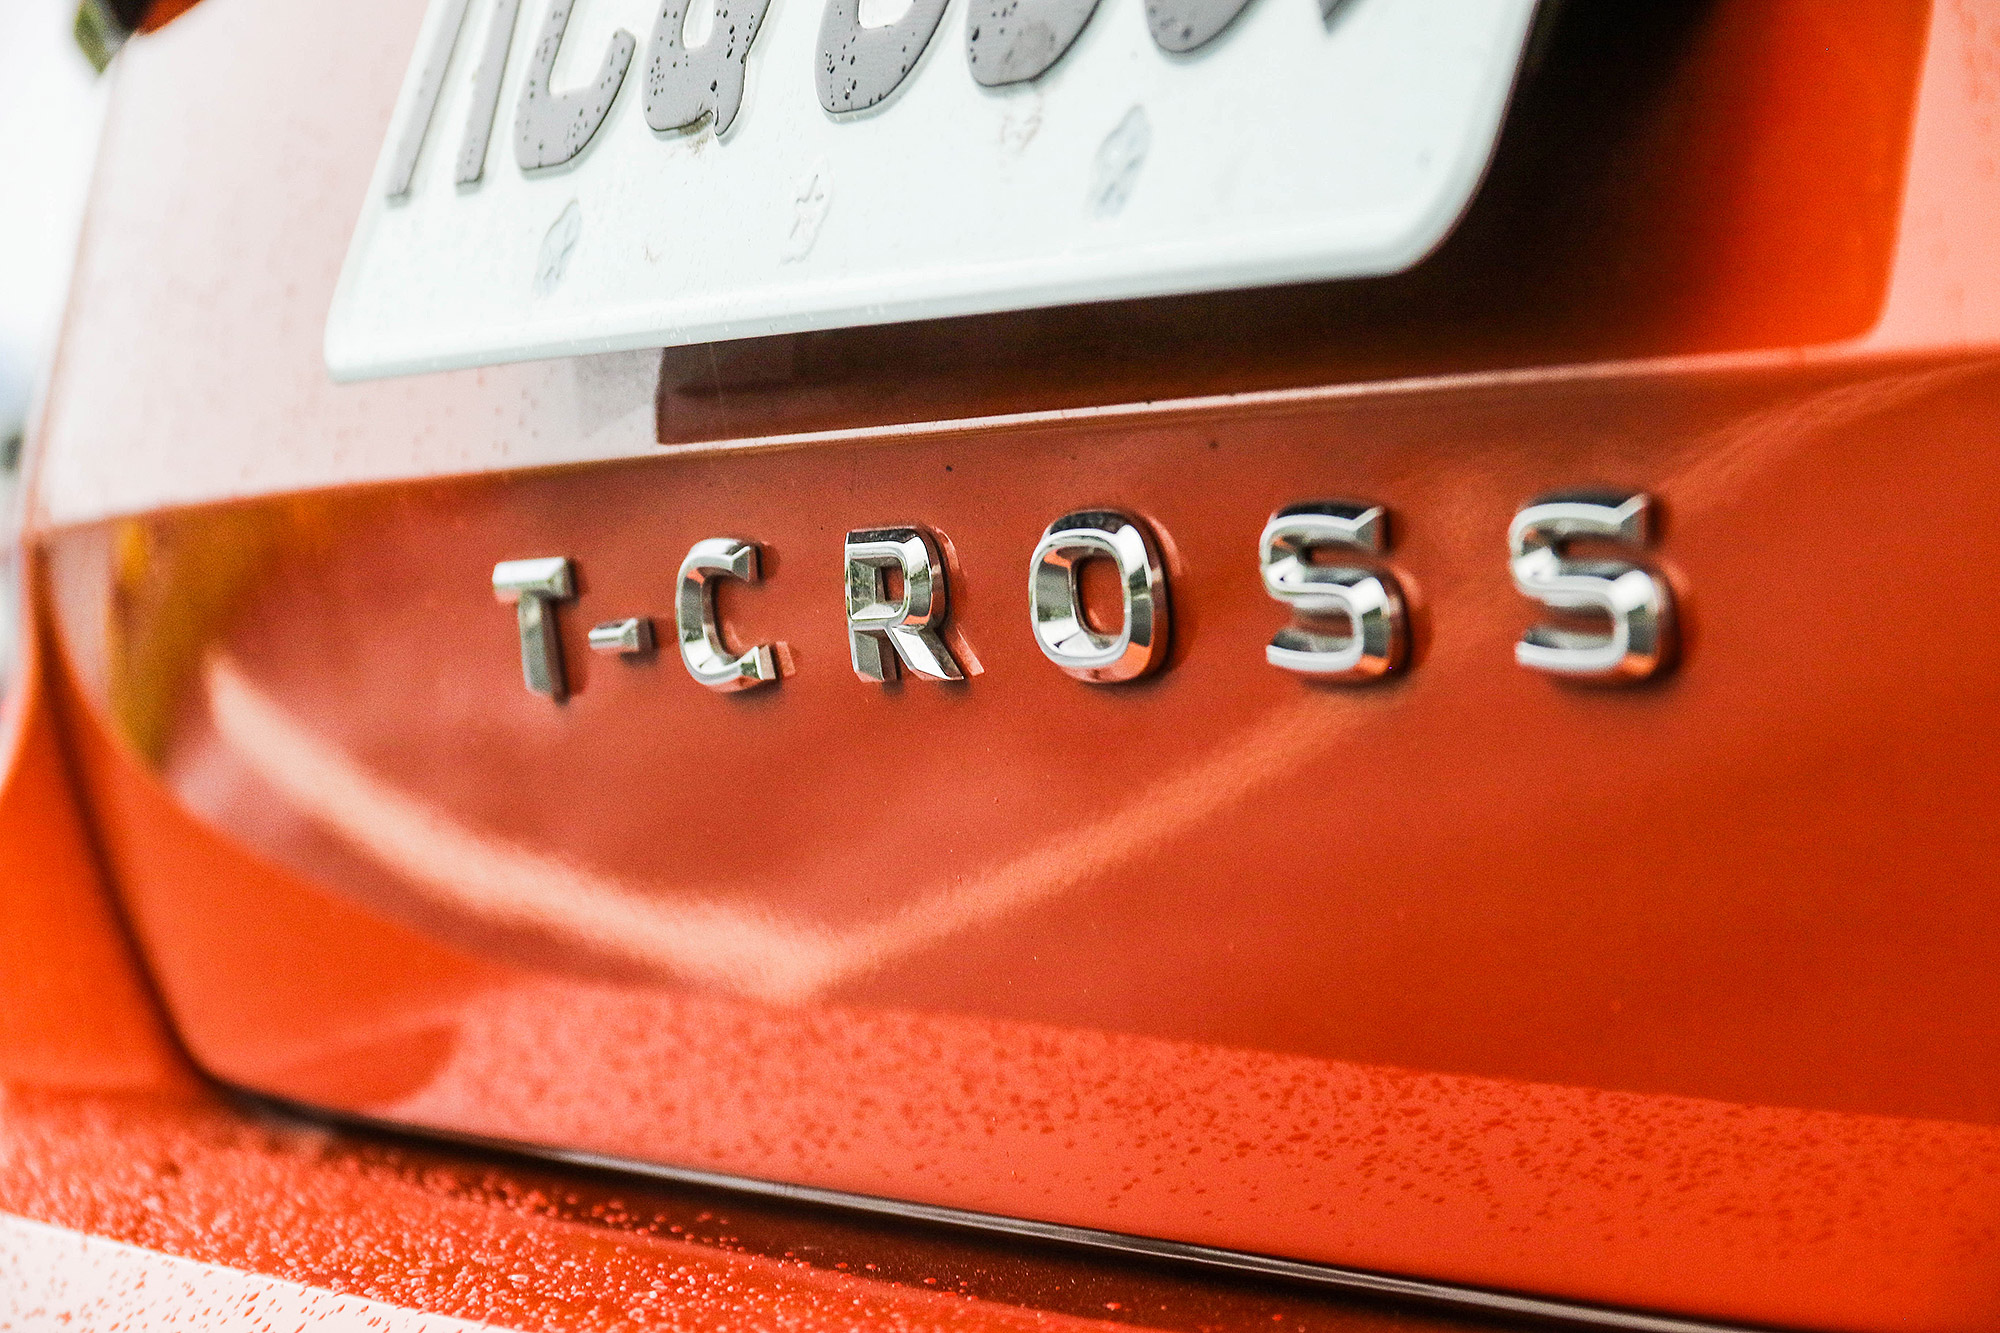 T-Cross 是 Volkswagen 瞄準入門級距的休旅作品。